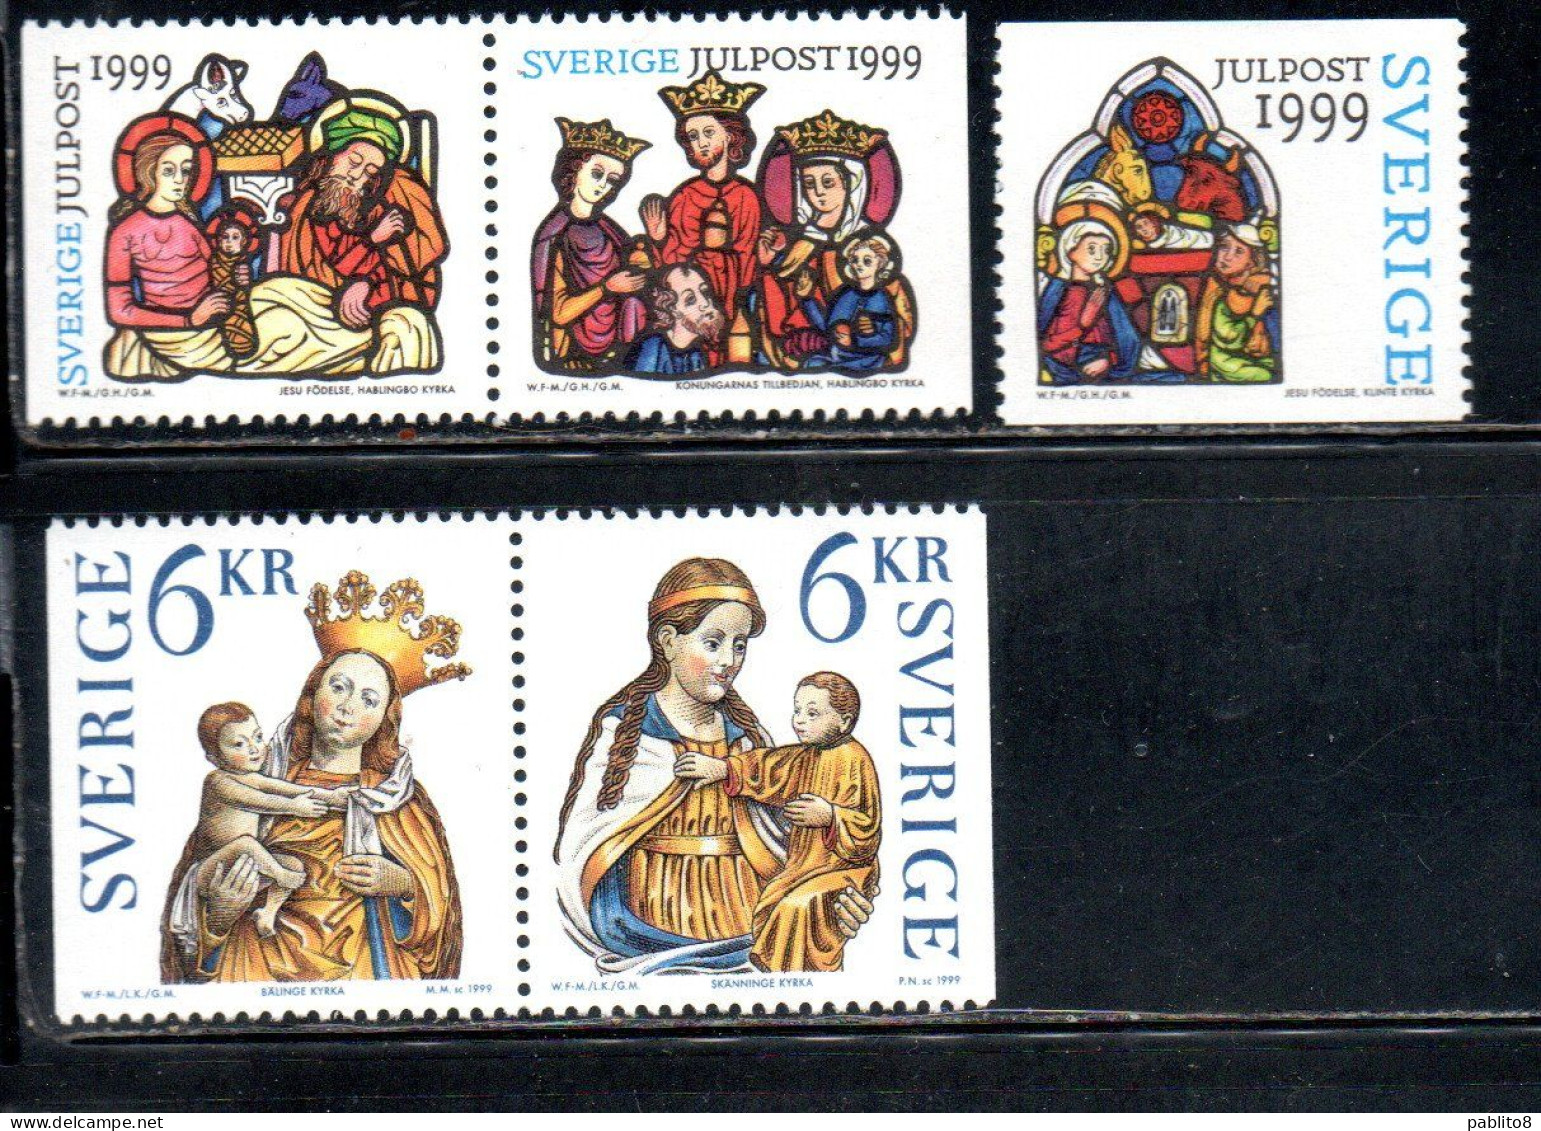 SWEDEN SVERIGE SVEZIA SUEDE 1999 CHRISTMAS NATALE NOEL WEIHNACHTEN NAVIDAD COMPLETE SET SERIE COMPLETA MNH - Unused Stamps